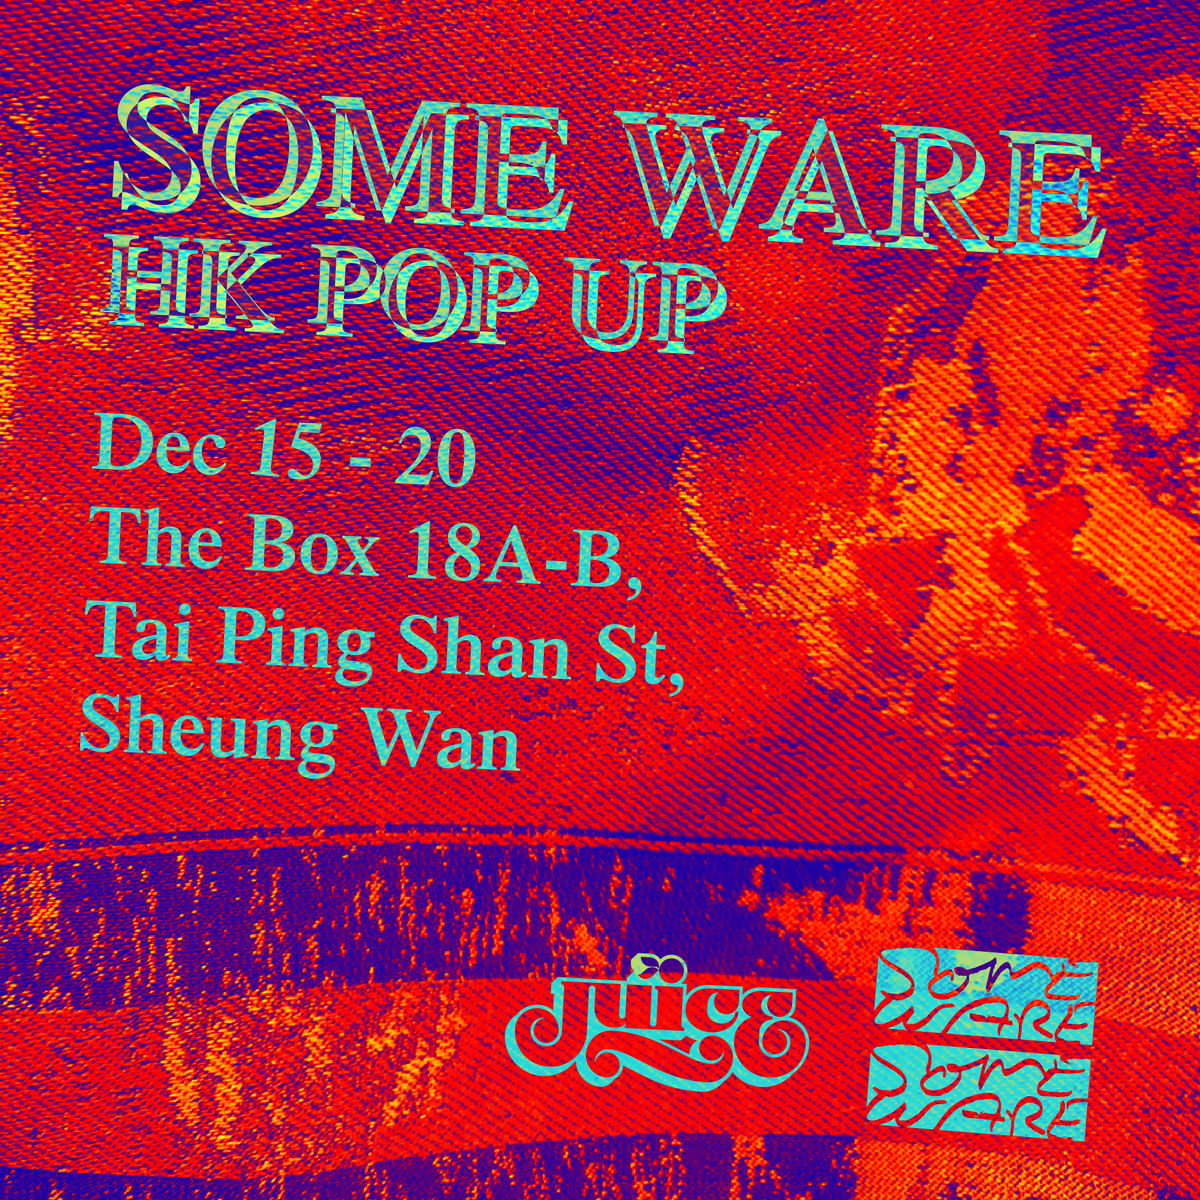 SOME WARE HONG KONG POP UP